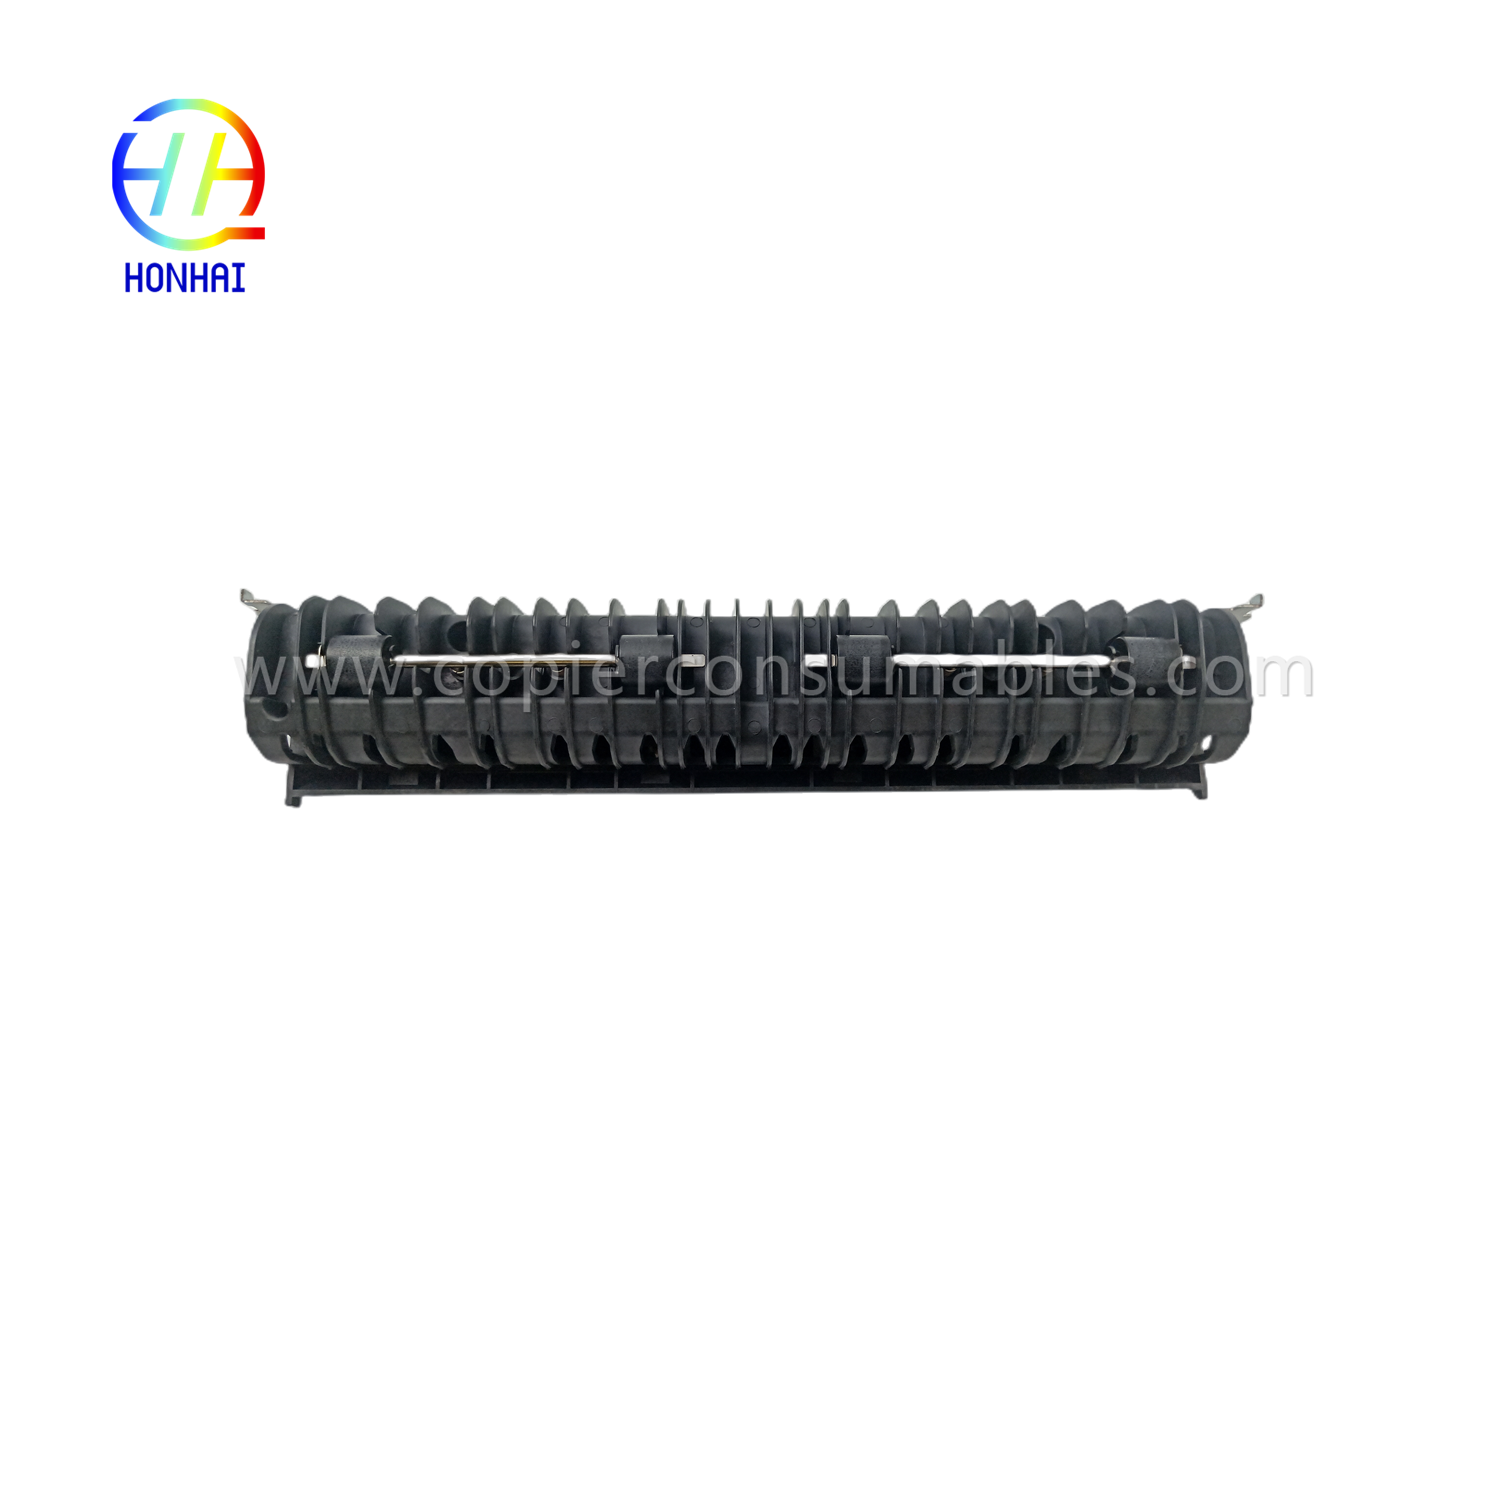 Fuser Unit Rear Guide for Kyocera 302GR93182 KM-3050 4050 5050 TASKalfa 420i 520i